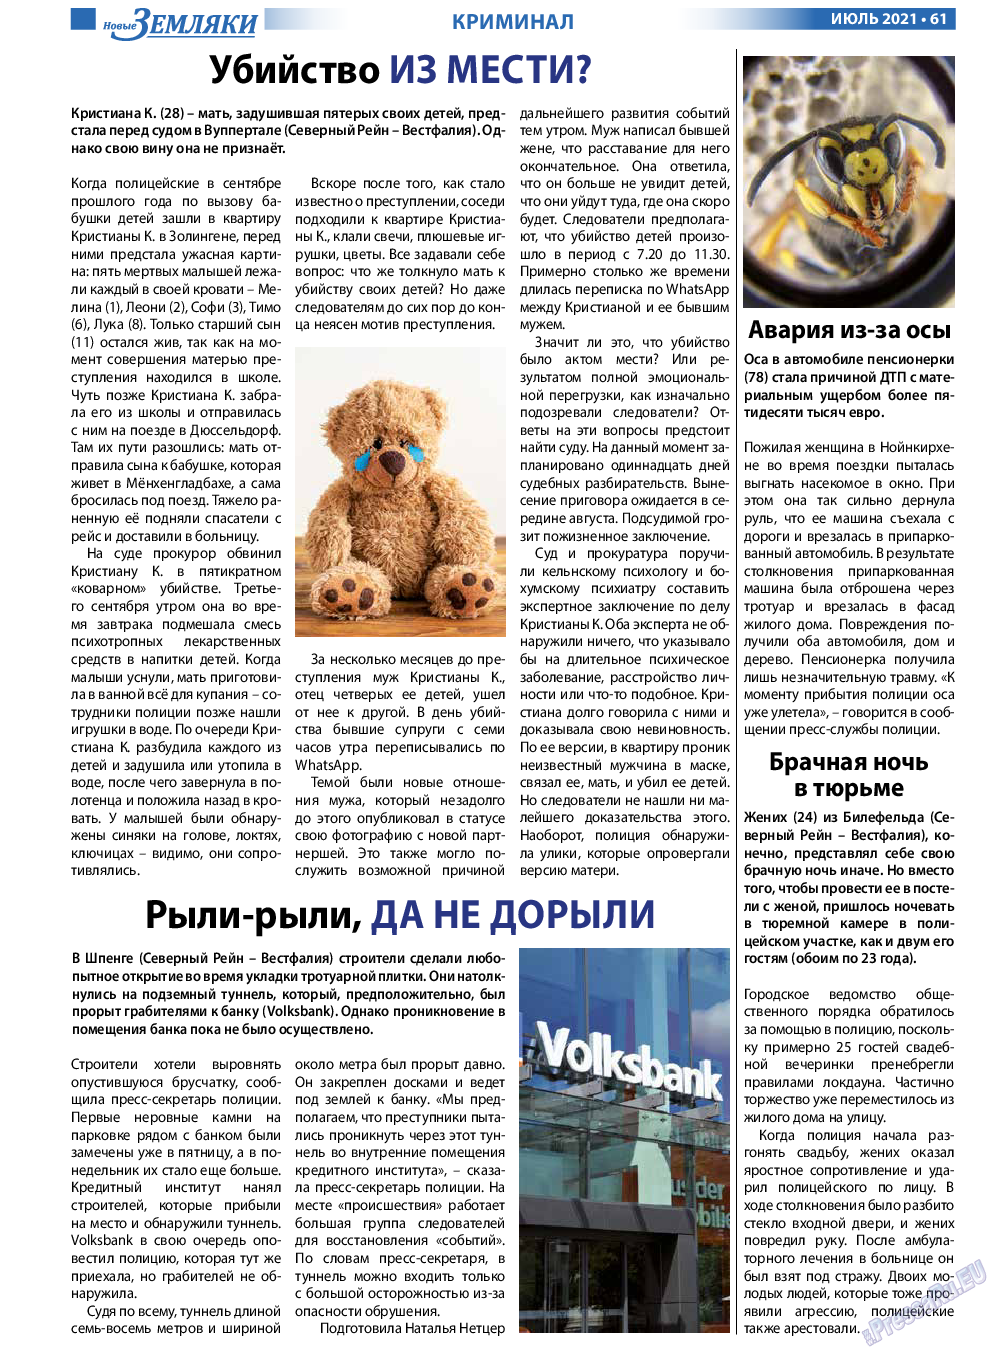 Новые Земляки, газета. 2021 №7 стр.61